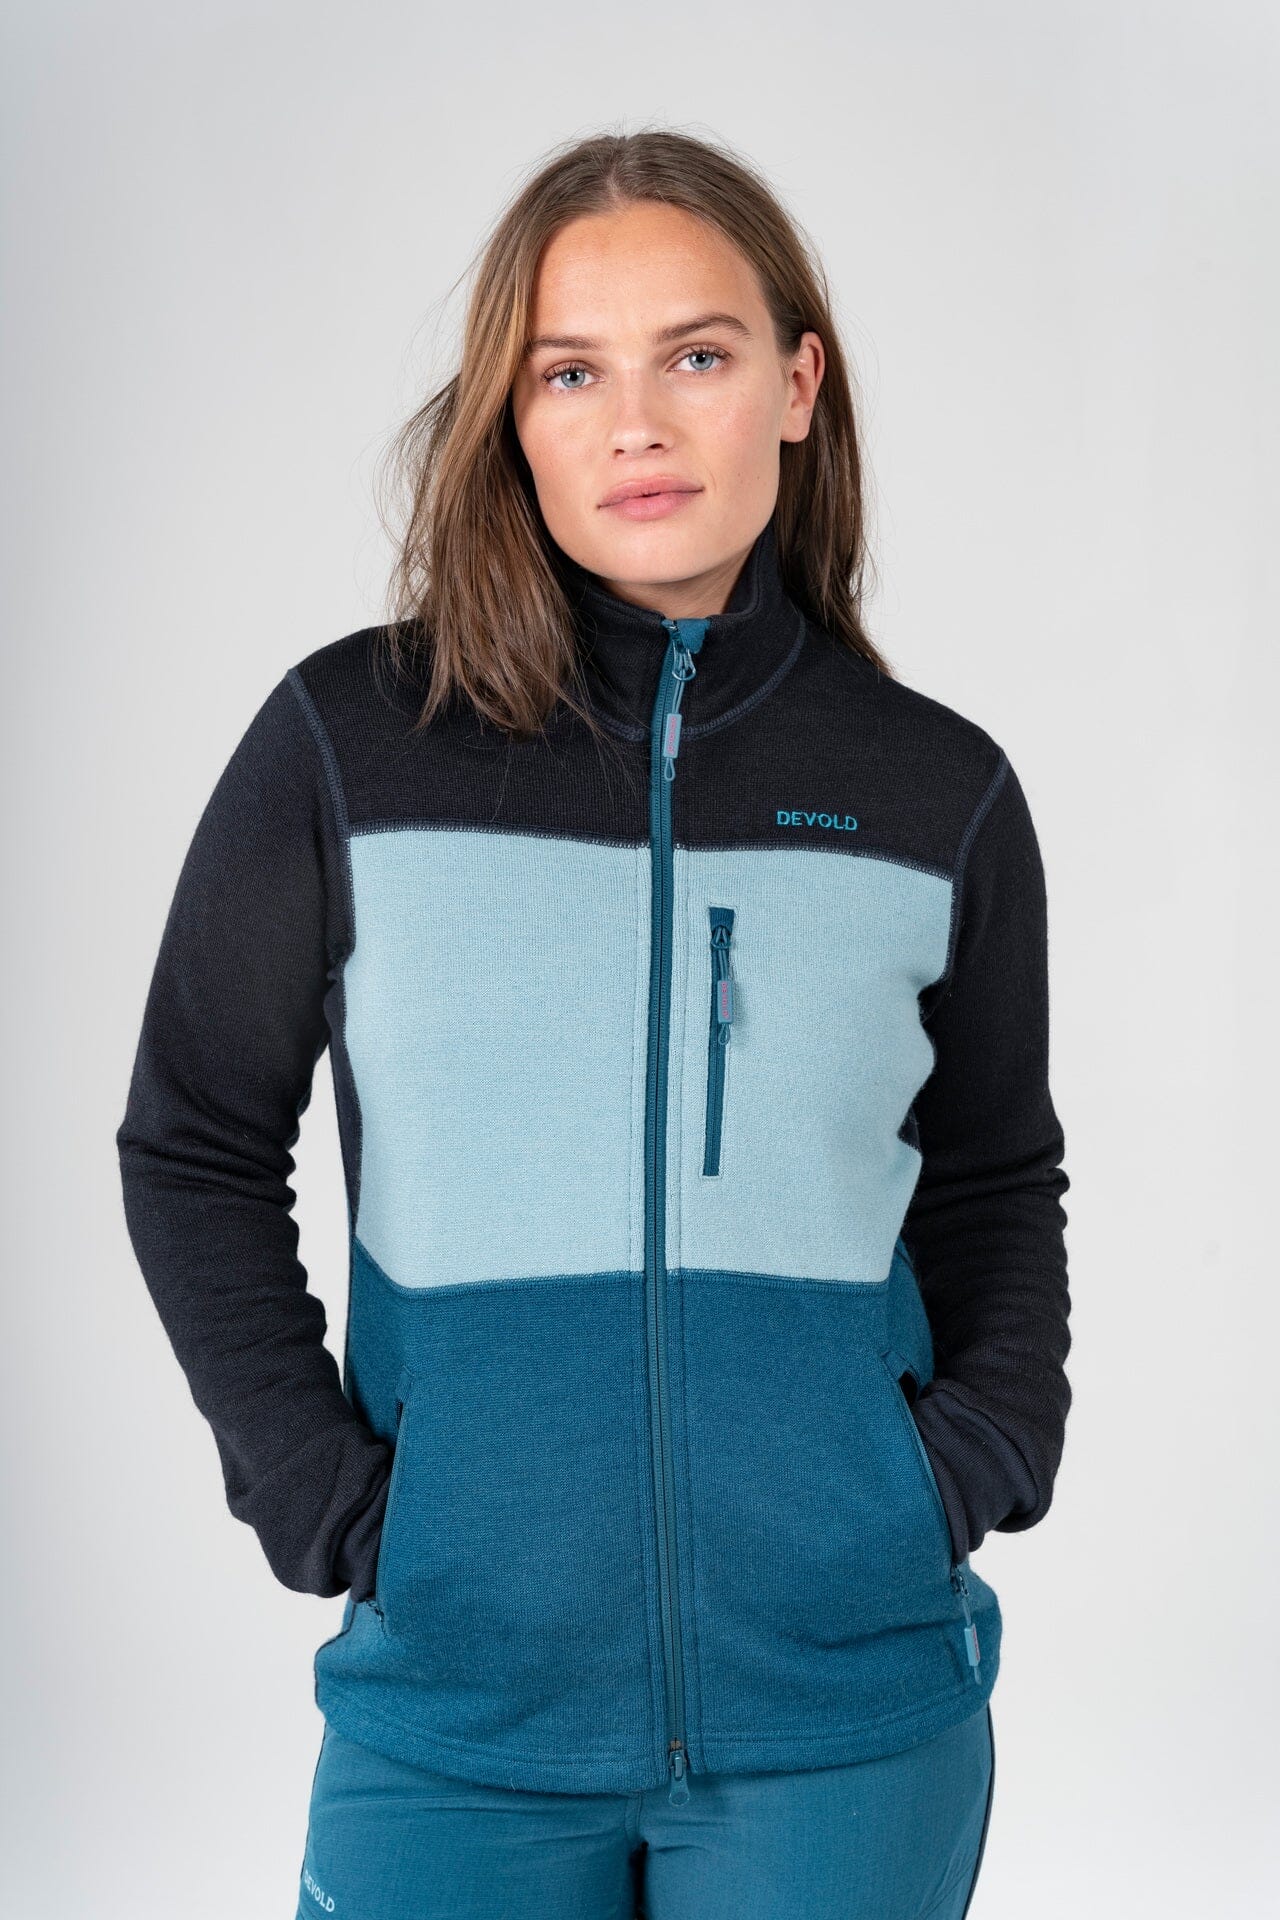 Devold - W's Thermo Jacket - 100% Wool - Weekendbee - sustainable sportswear